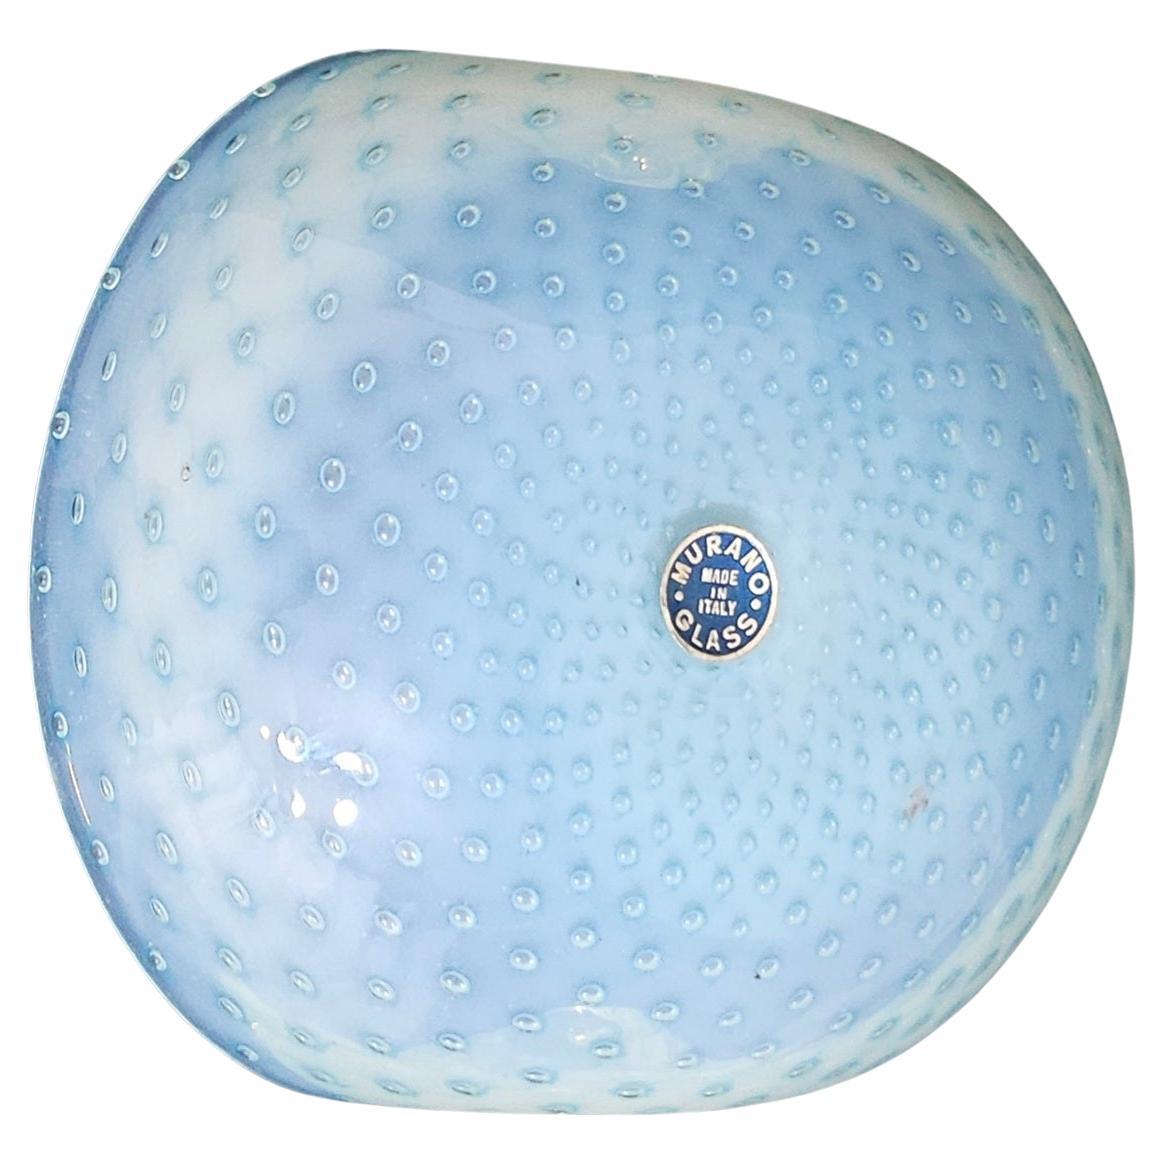 Fratelli Toso Murano Glass Bullicante Decorative Dish, Opaline. Original Label For Sale